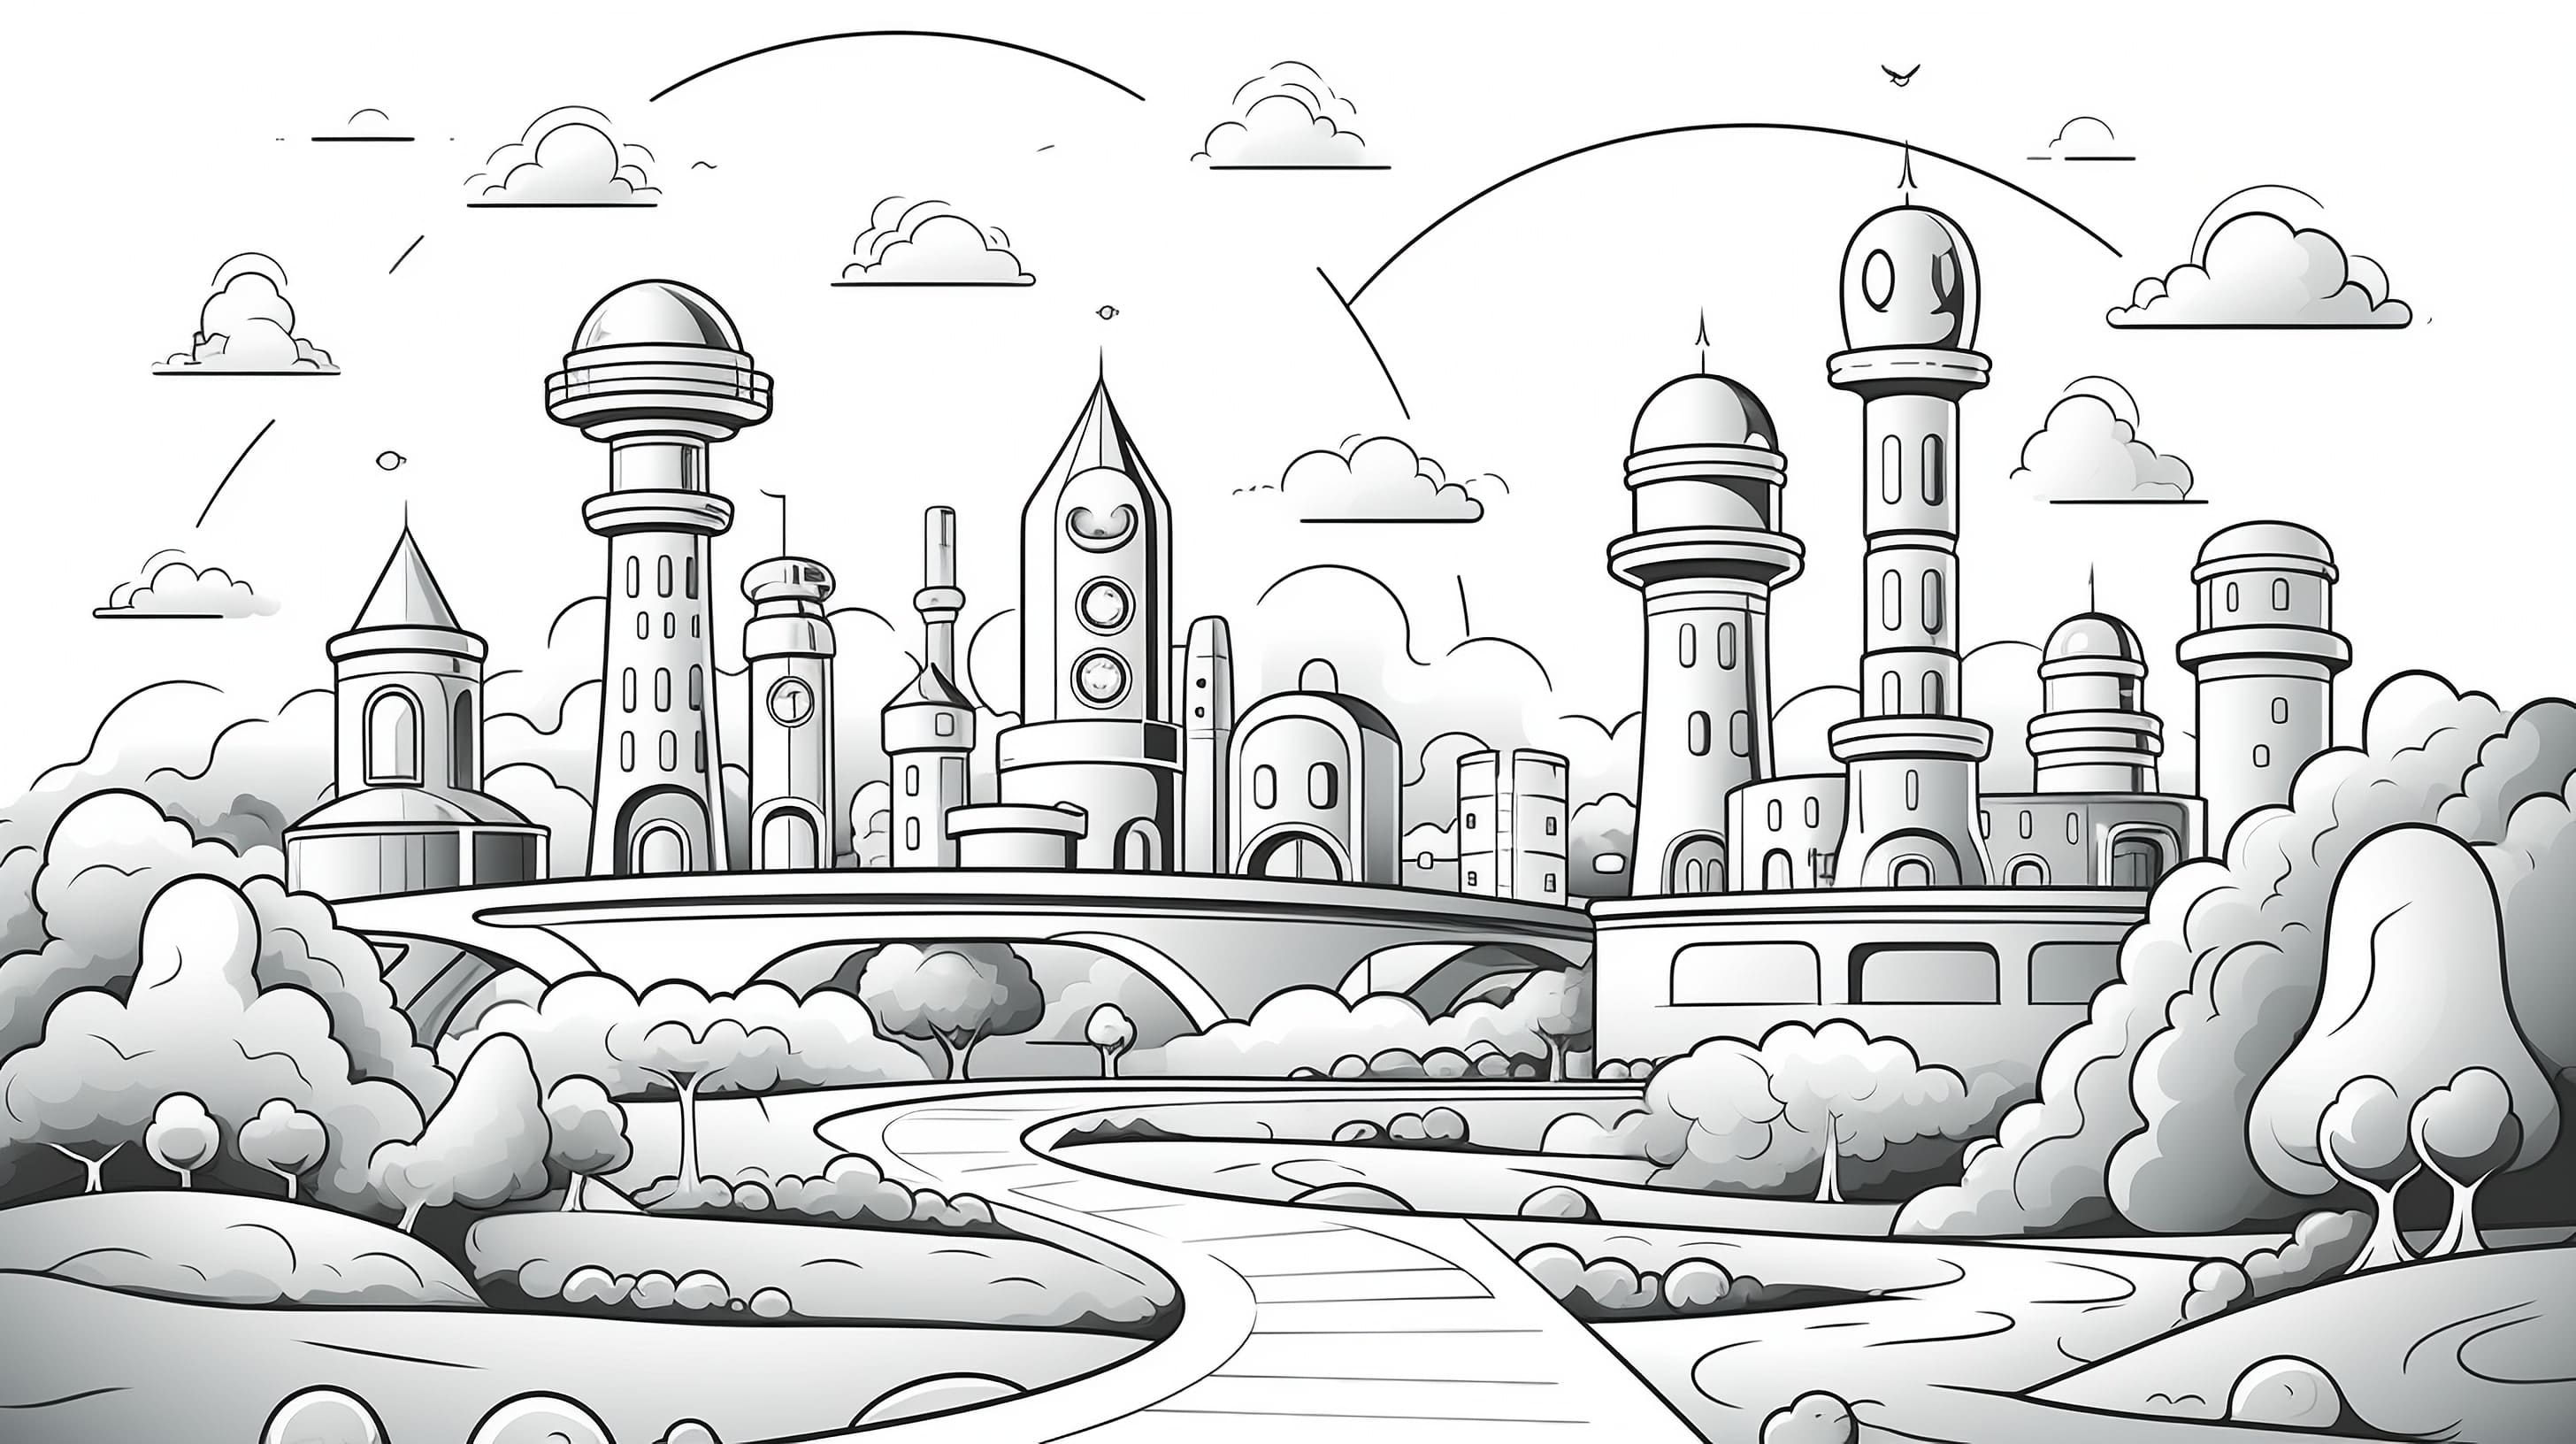 Черно-белый рисунок маленького городка с домами в форме ракет